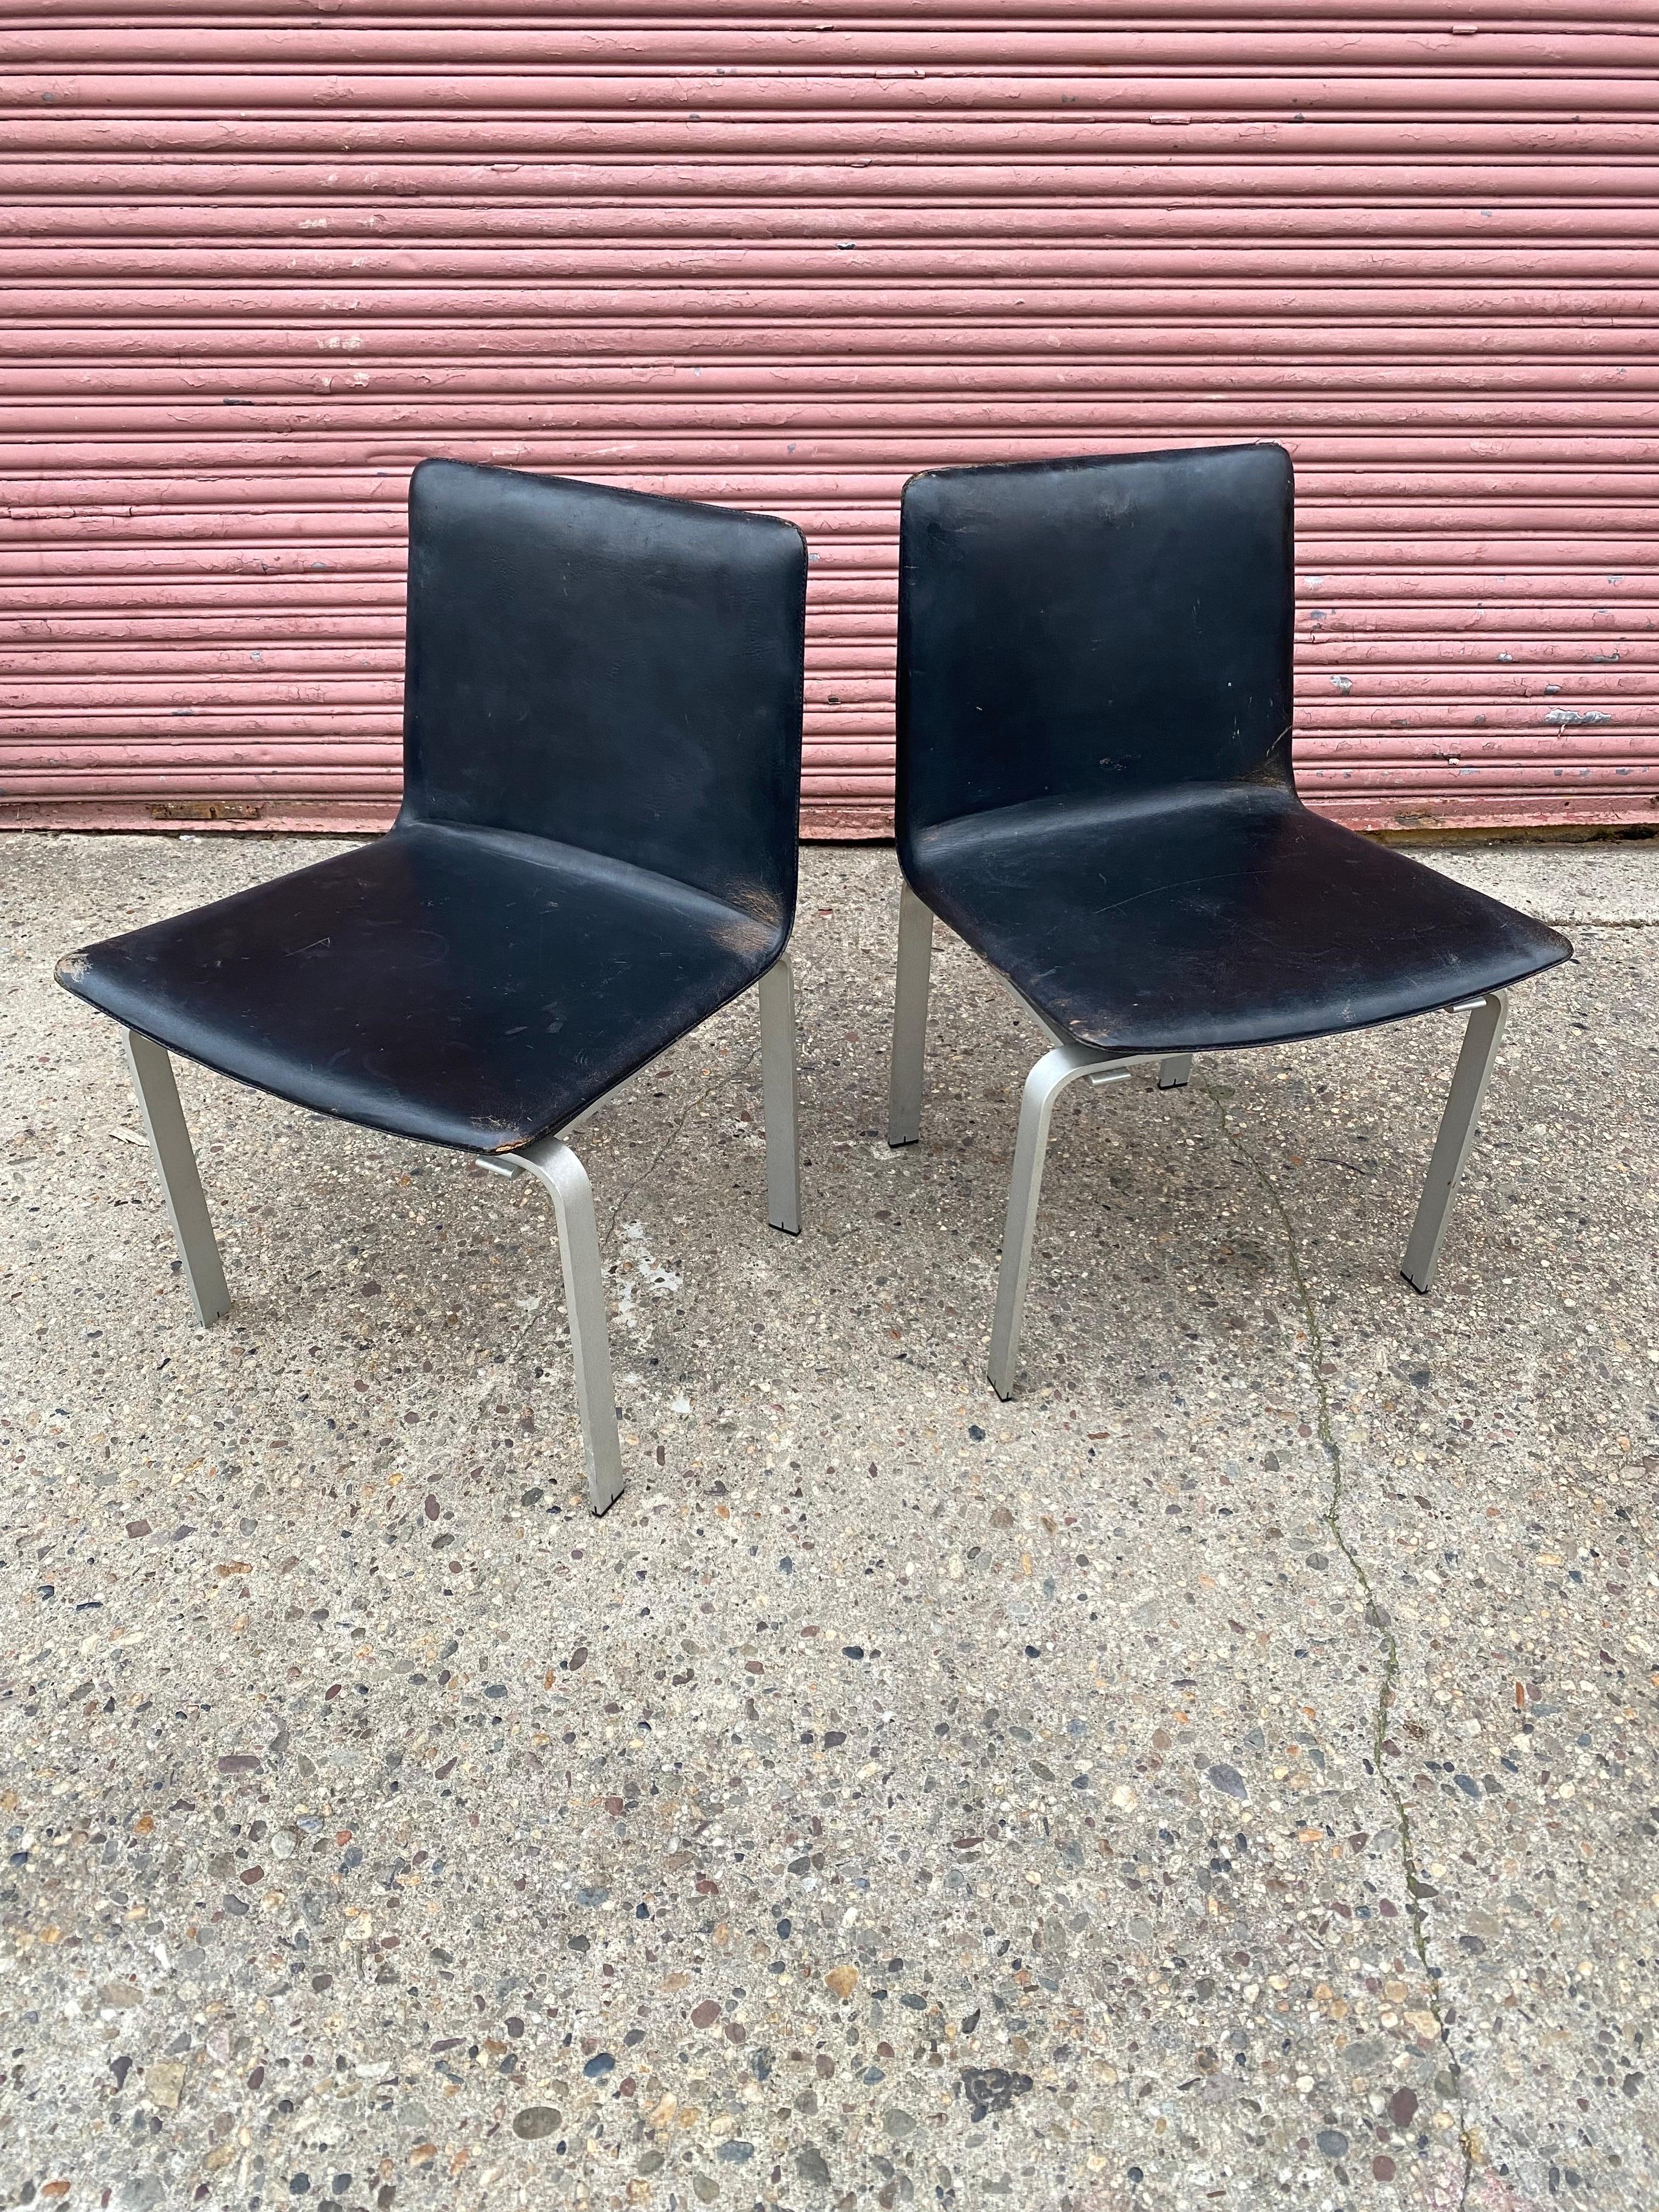 Jorgen Hoj Ein Paar elegante und schöne Stühle aus Aluminium und Leder.  Hoj war ein Schüler von Poul Kjaerholm, und der Einfluss ist unübersehbar.  Wunderschön gemacht.  Dieses Paar weist Gebrauchsspuren auf!  Kantenabrieb am Leder und ein